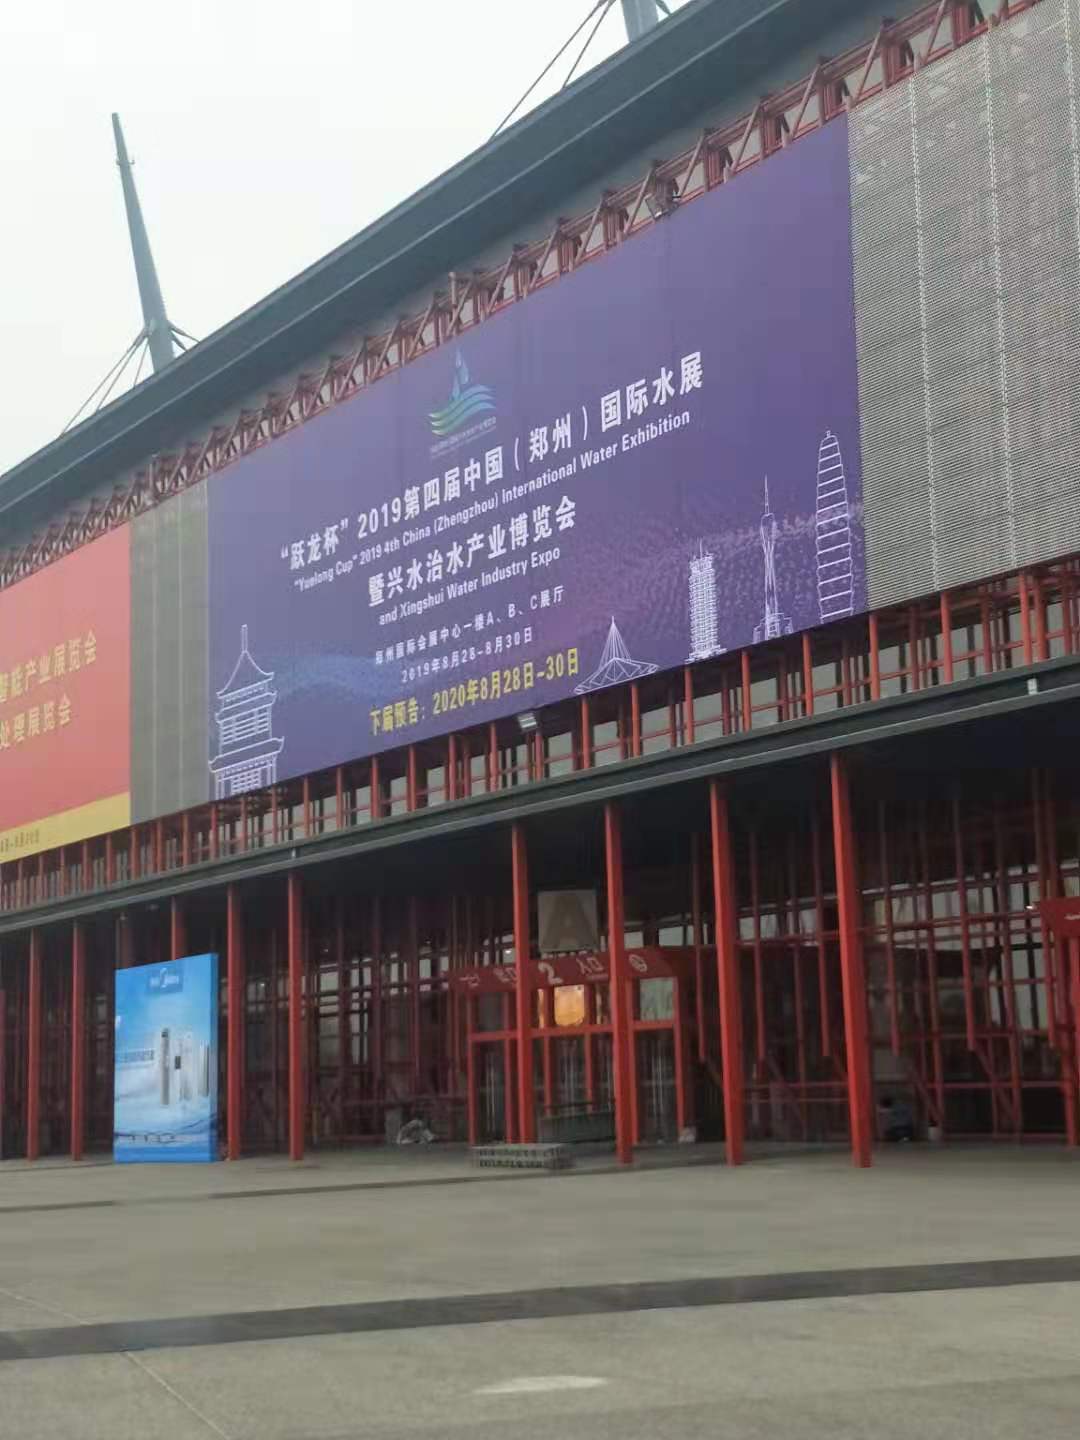 深圳市华聚科学仪器有限公司参加2019第四届中国郑州国际水展